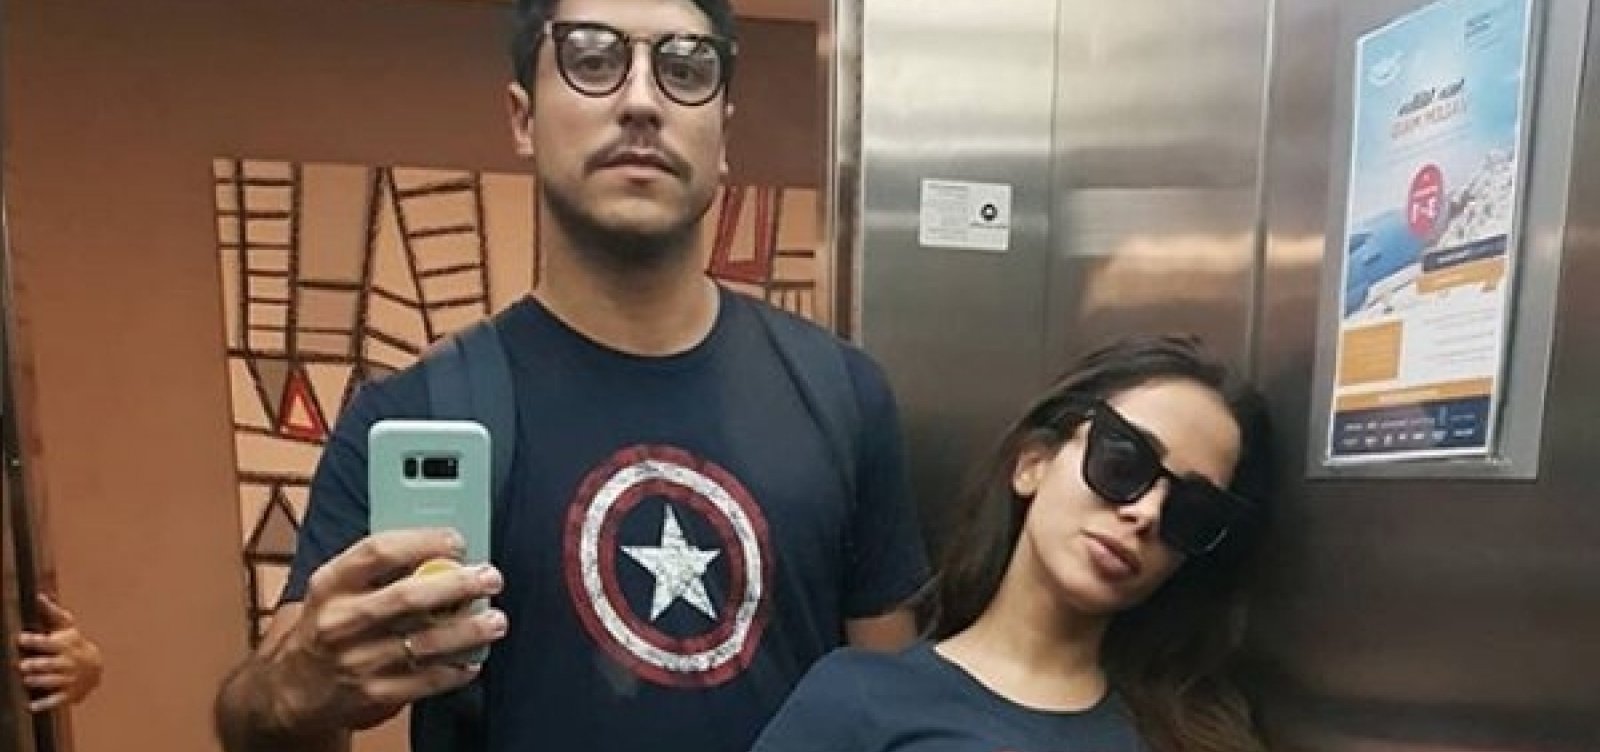 Anitta posta foto com marido para acabar boatos de separação: 'Existe vida fora das redes sociais'